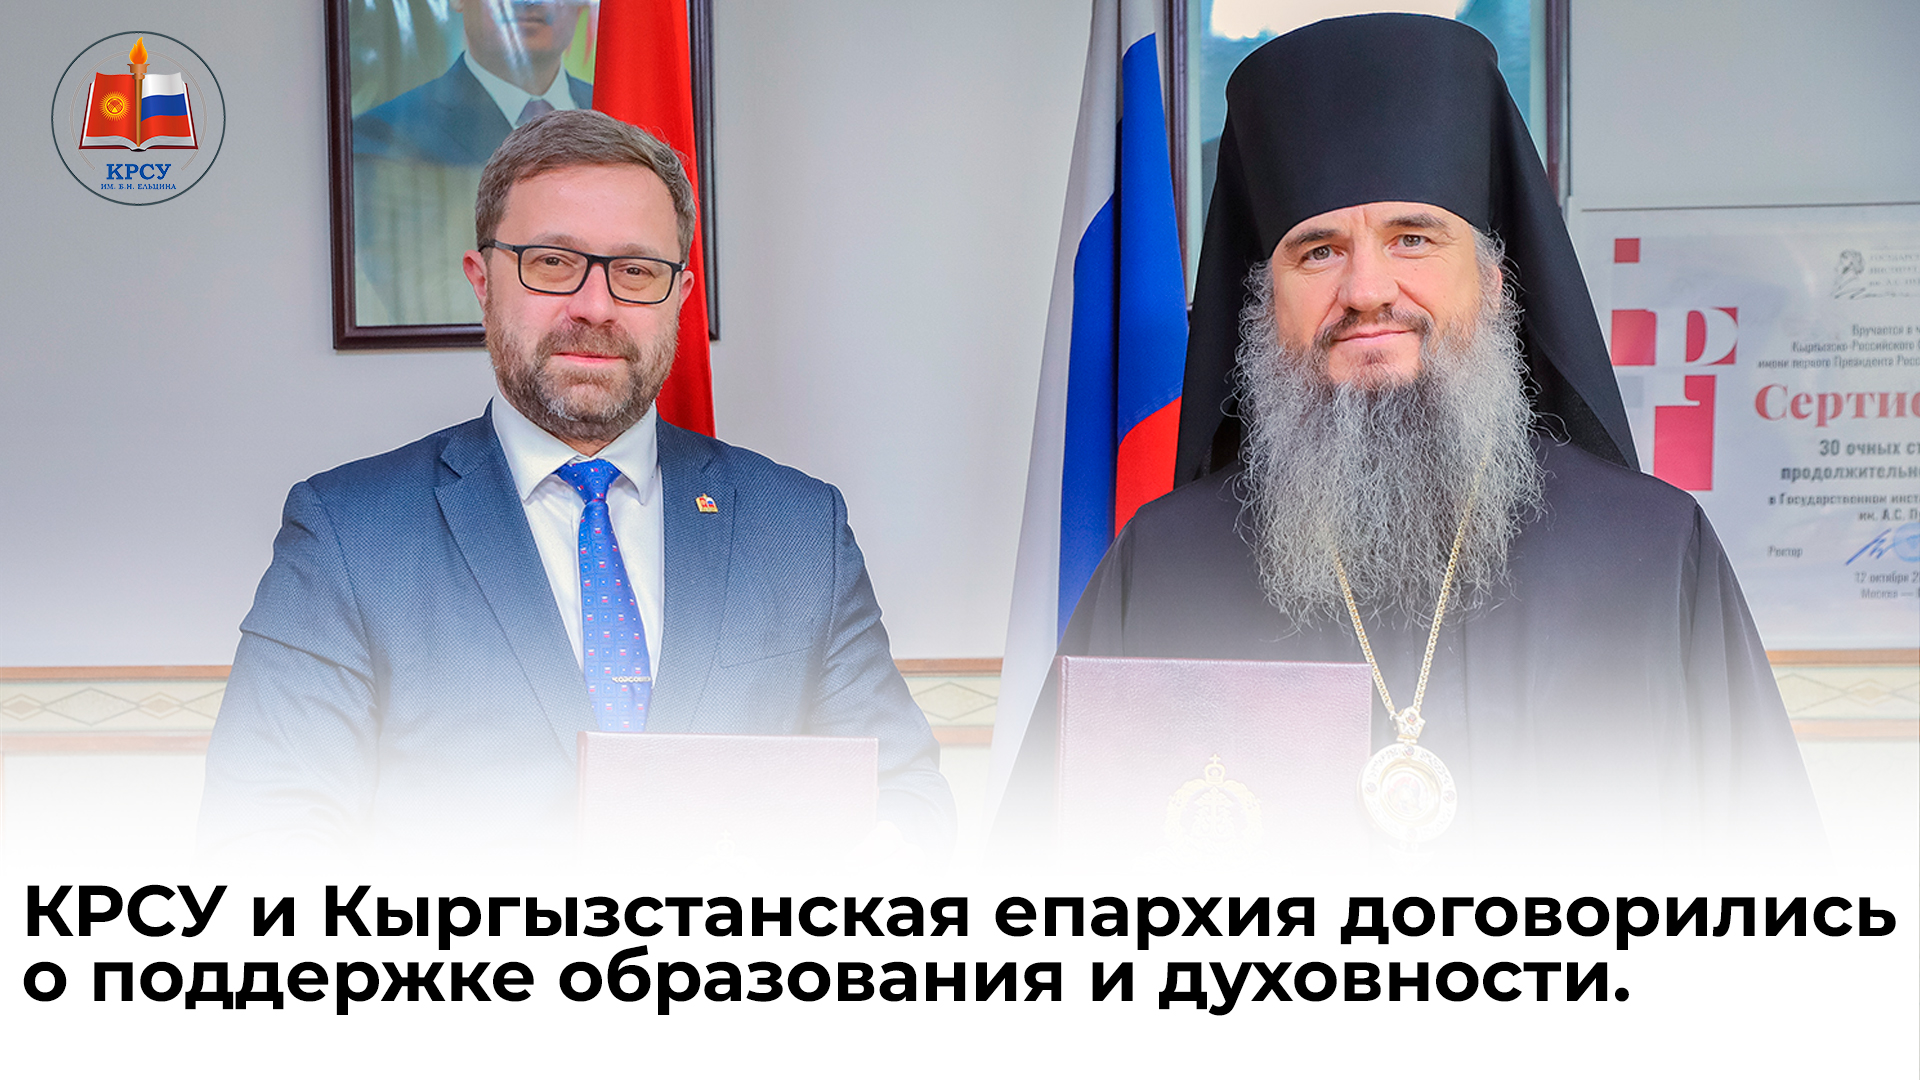 КРСУ и Кыргызстанская епархия договорились о поддержке образования и духовности.